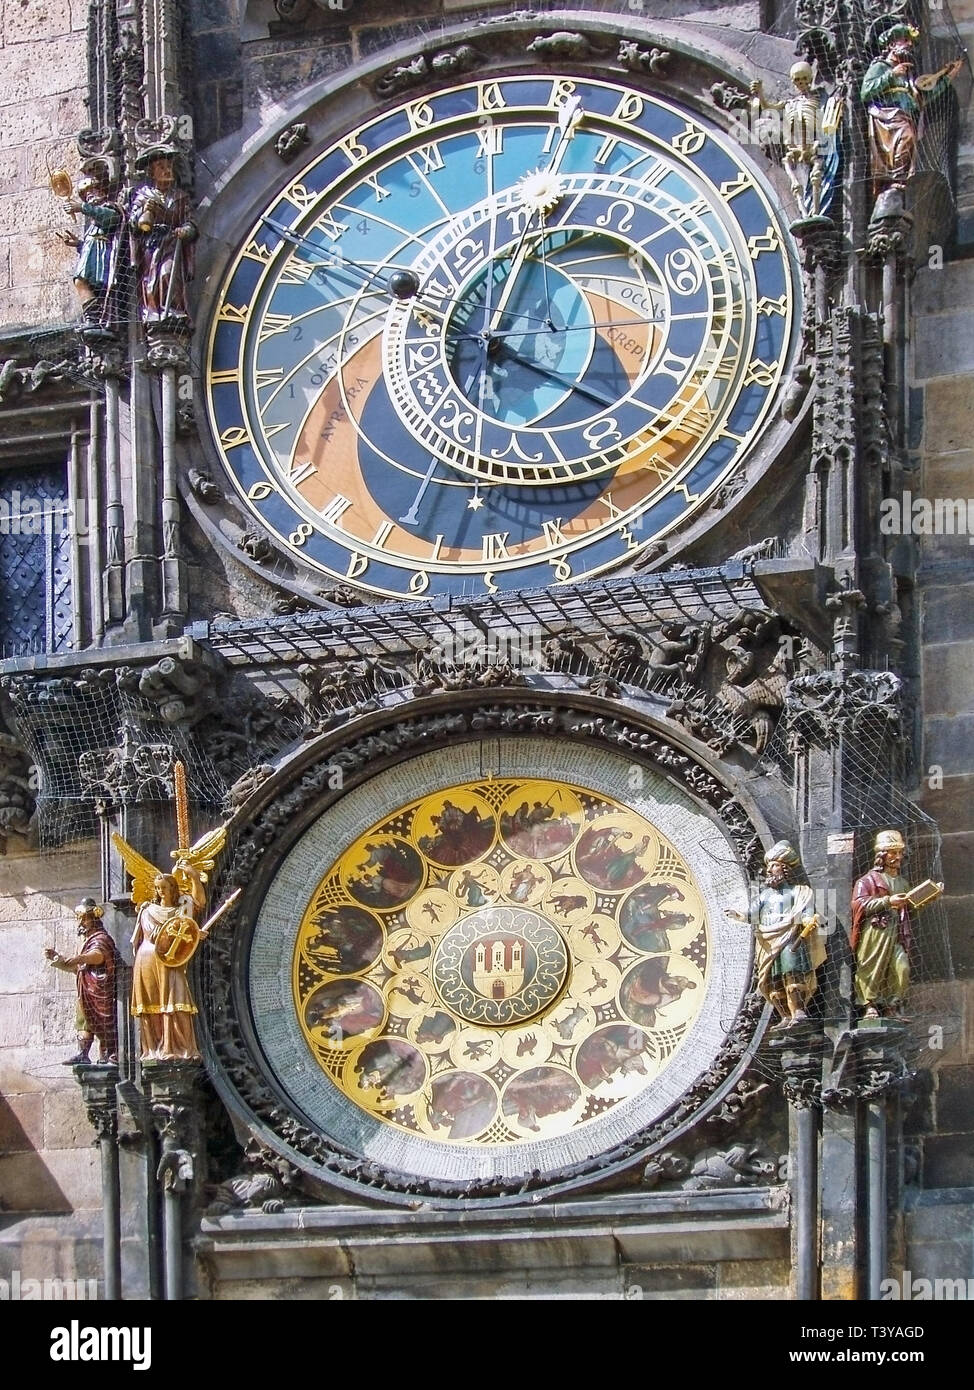 Prag mittelalterliche astronomische Uhr Stockfoto